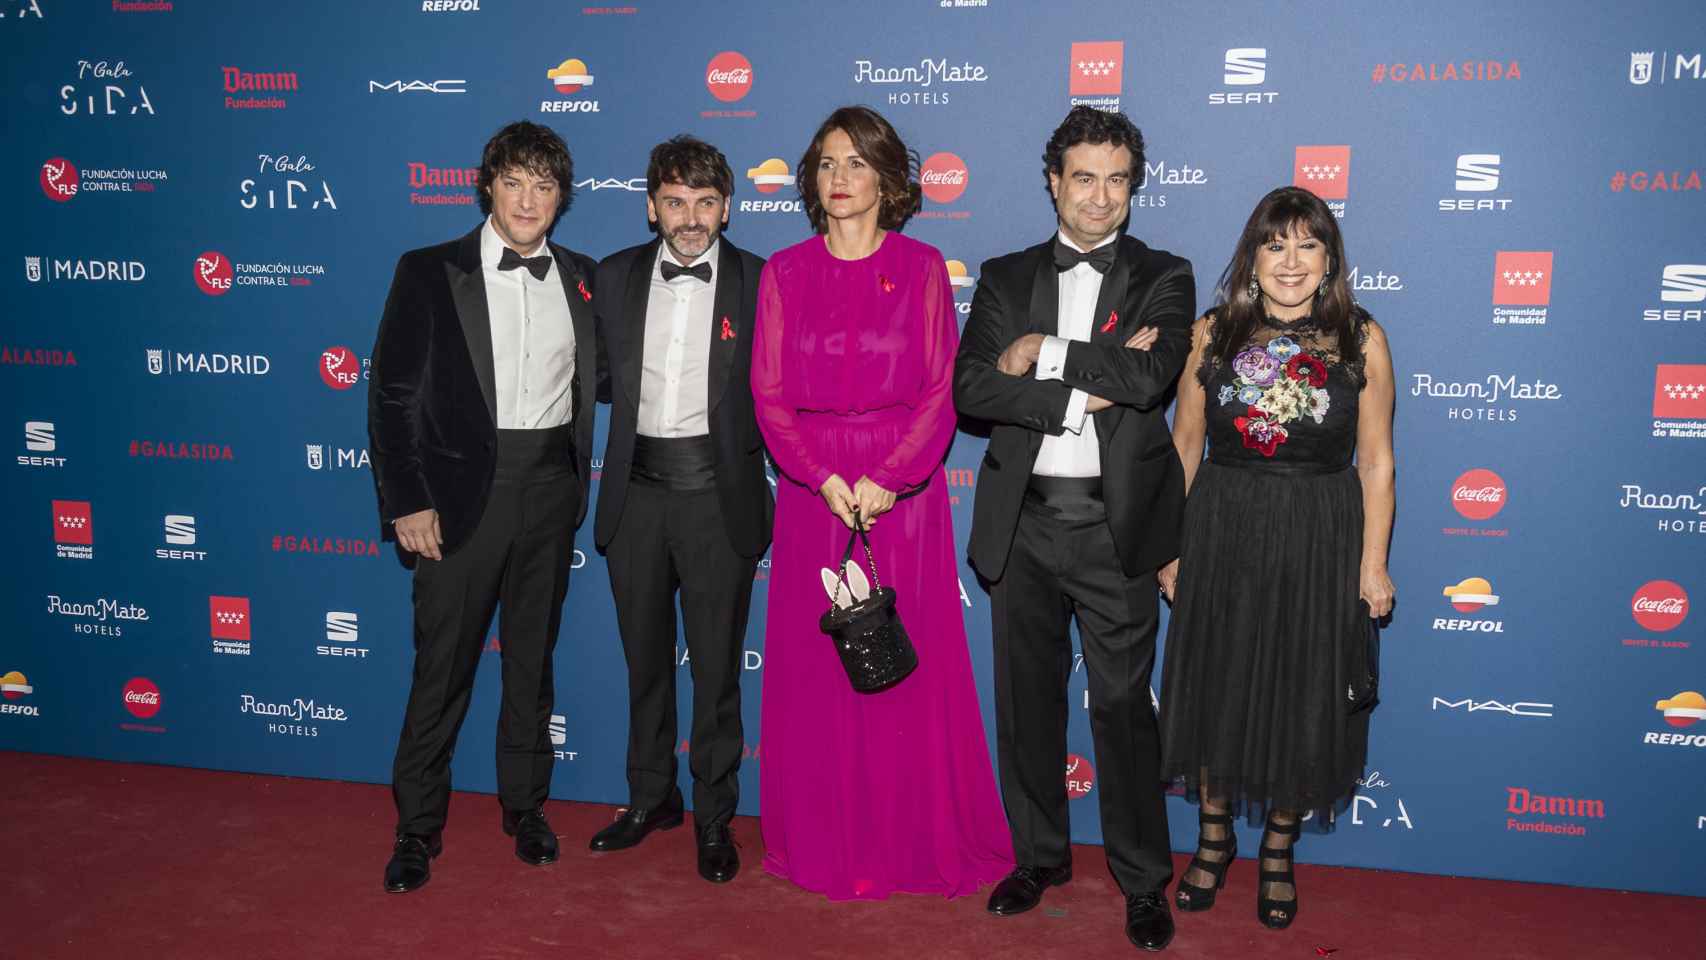 Los actores Fernando Tejero y Loles León con los presentadores de 'Master Chef' en la Gala Sida de este lunes en Madrid